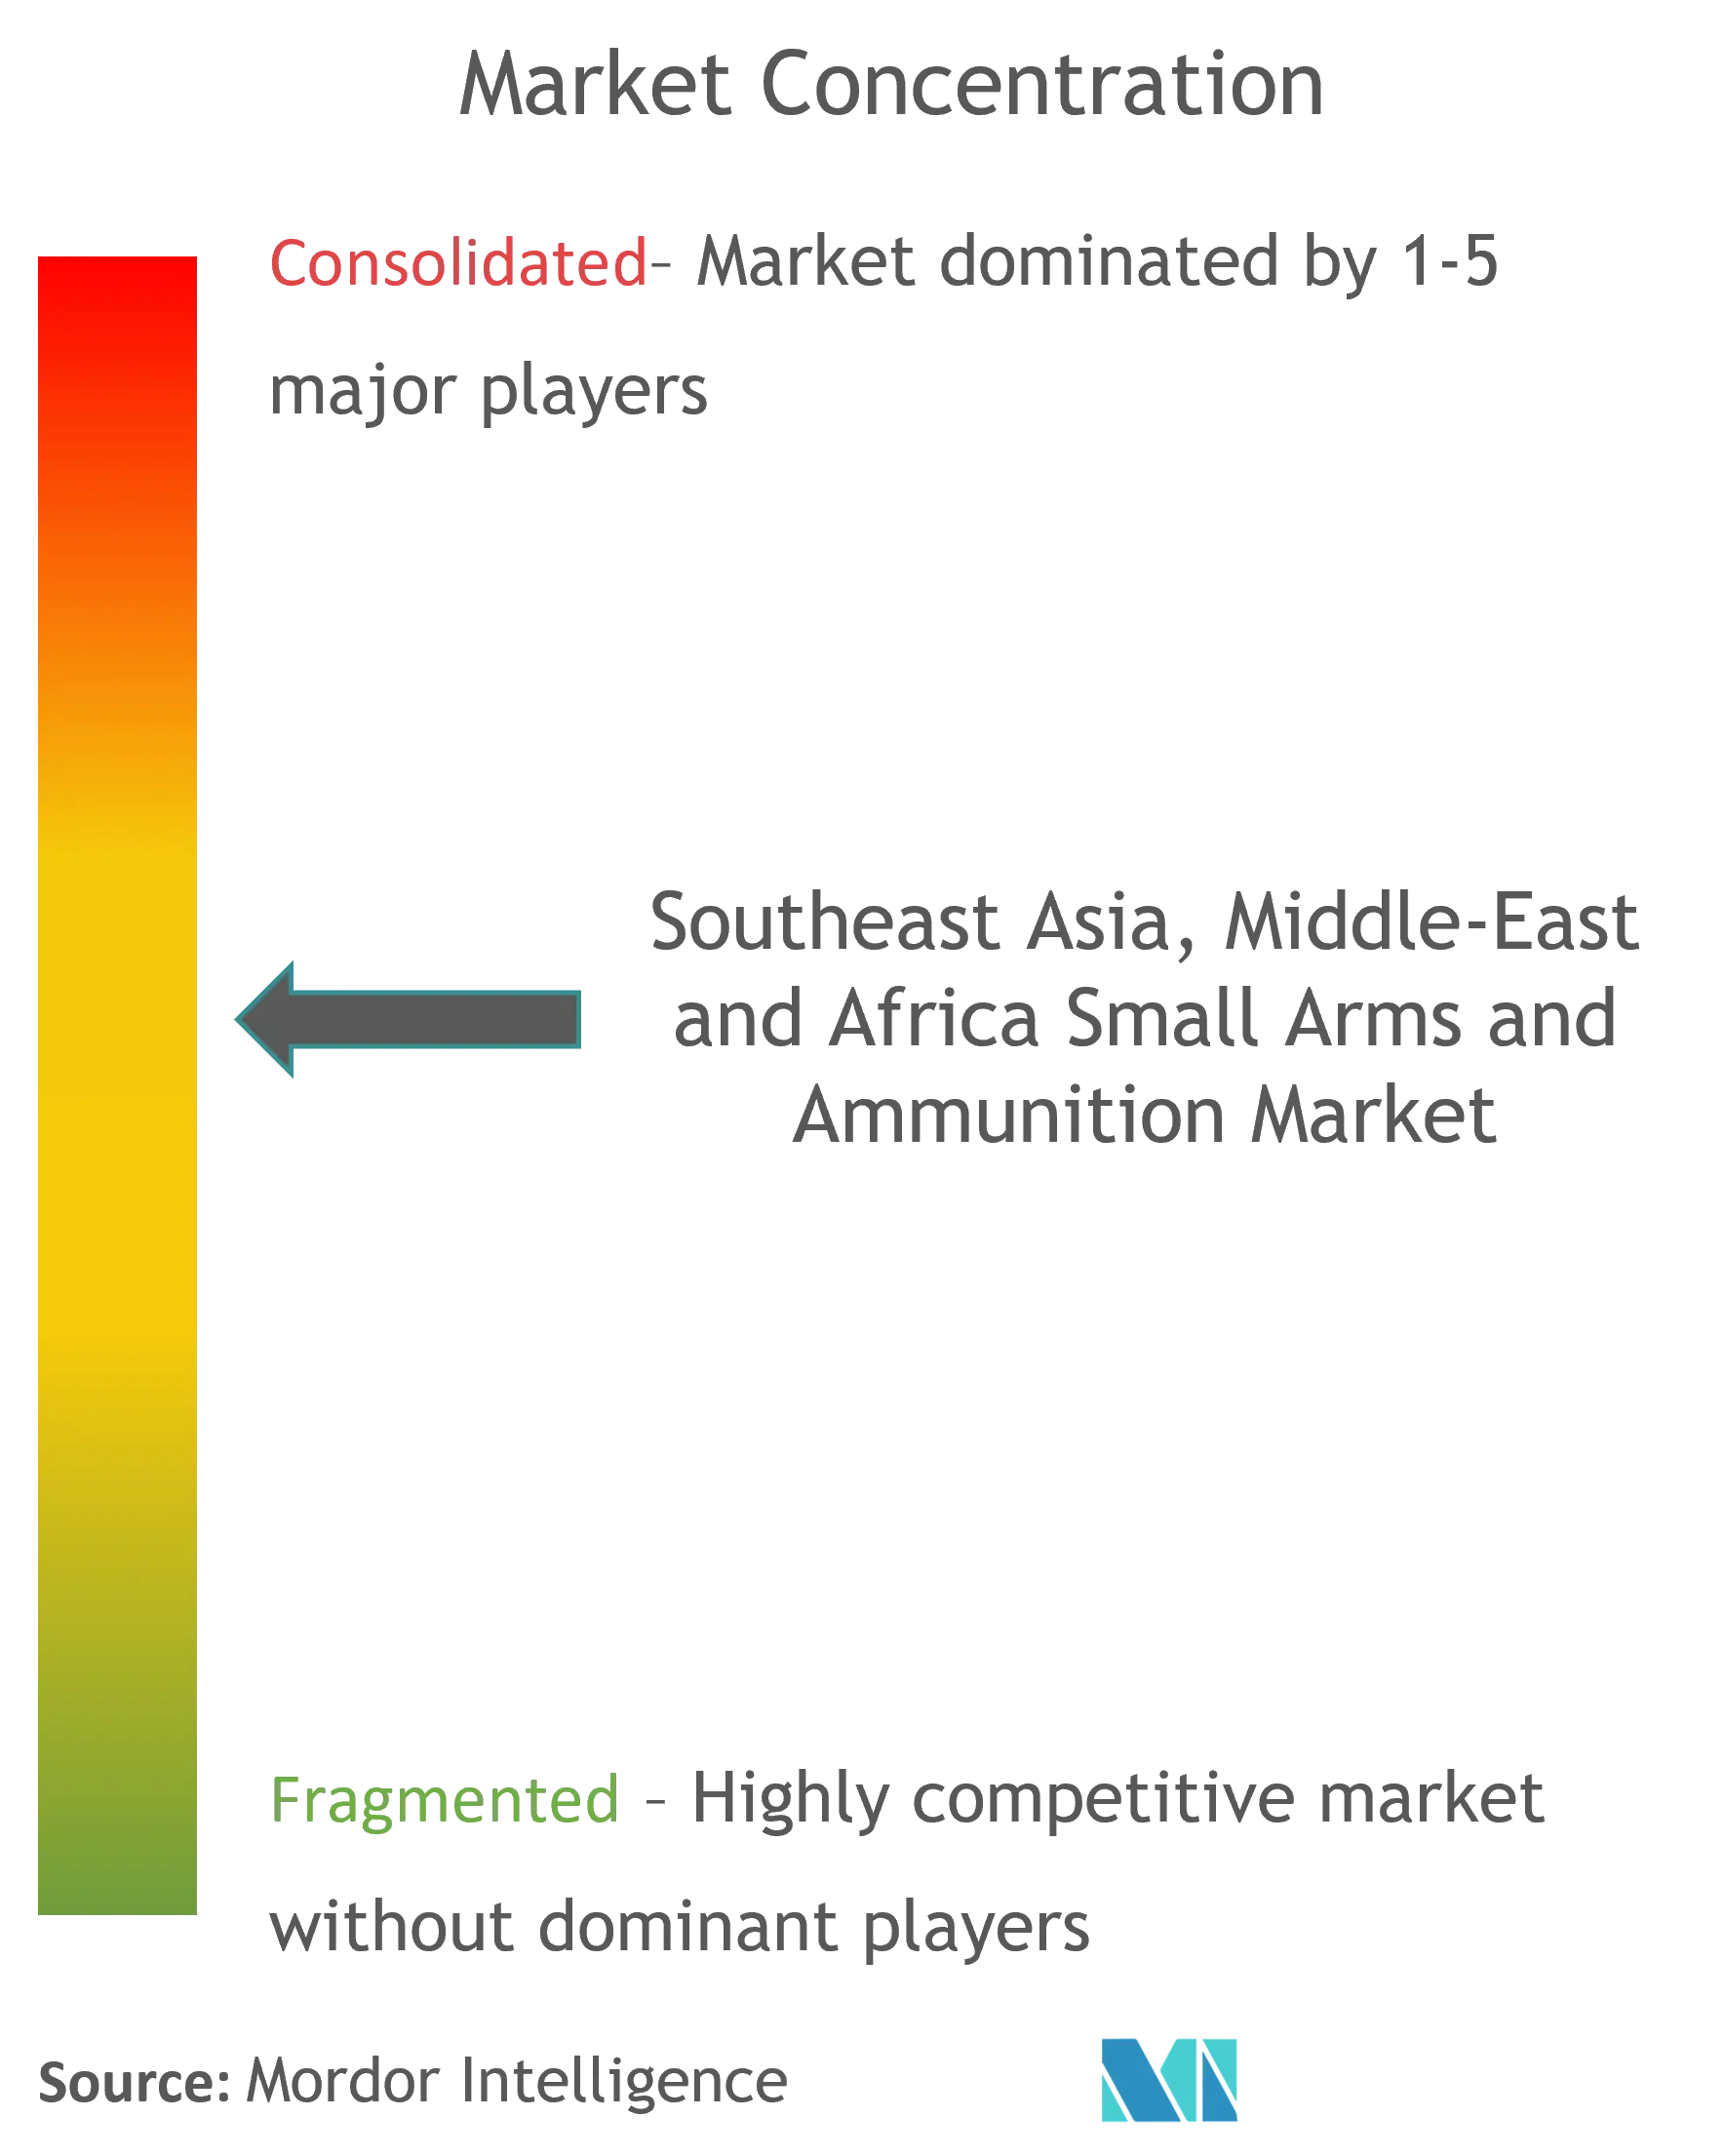 Kleinwaffen und Munition aus Südostasien, dem Nahen Osten und AfrikaMarktkonzentration